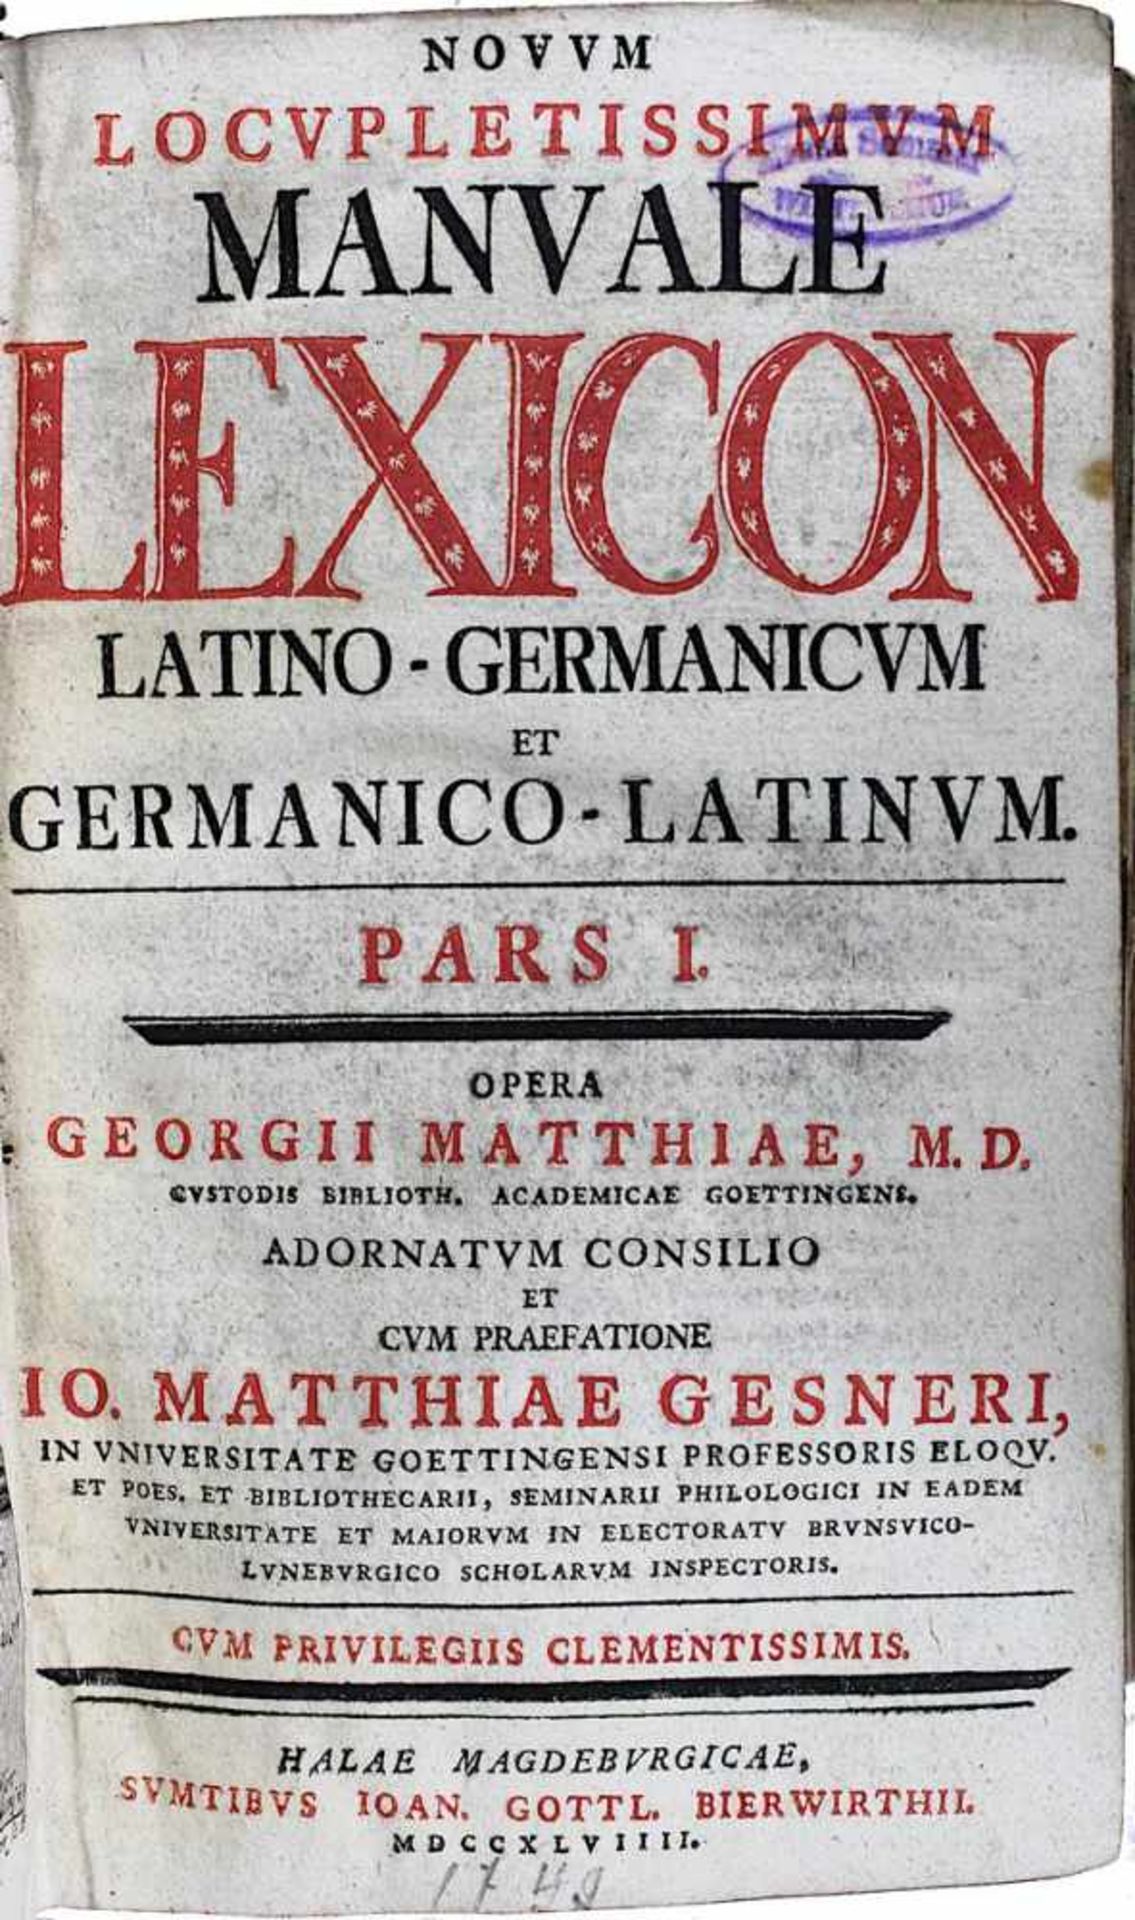 Matthiae, Georg (Husum 1708 - 1773 Göttingen), "Novum Locupletissimum Manuale Lexicon Latino-